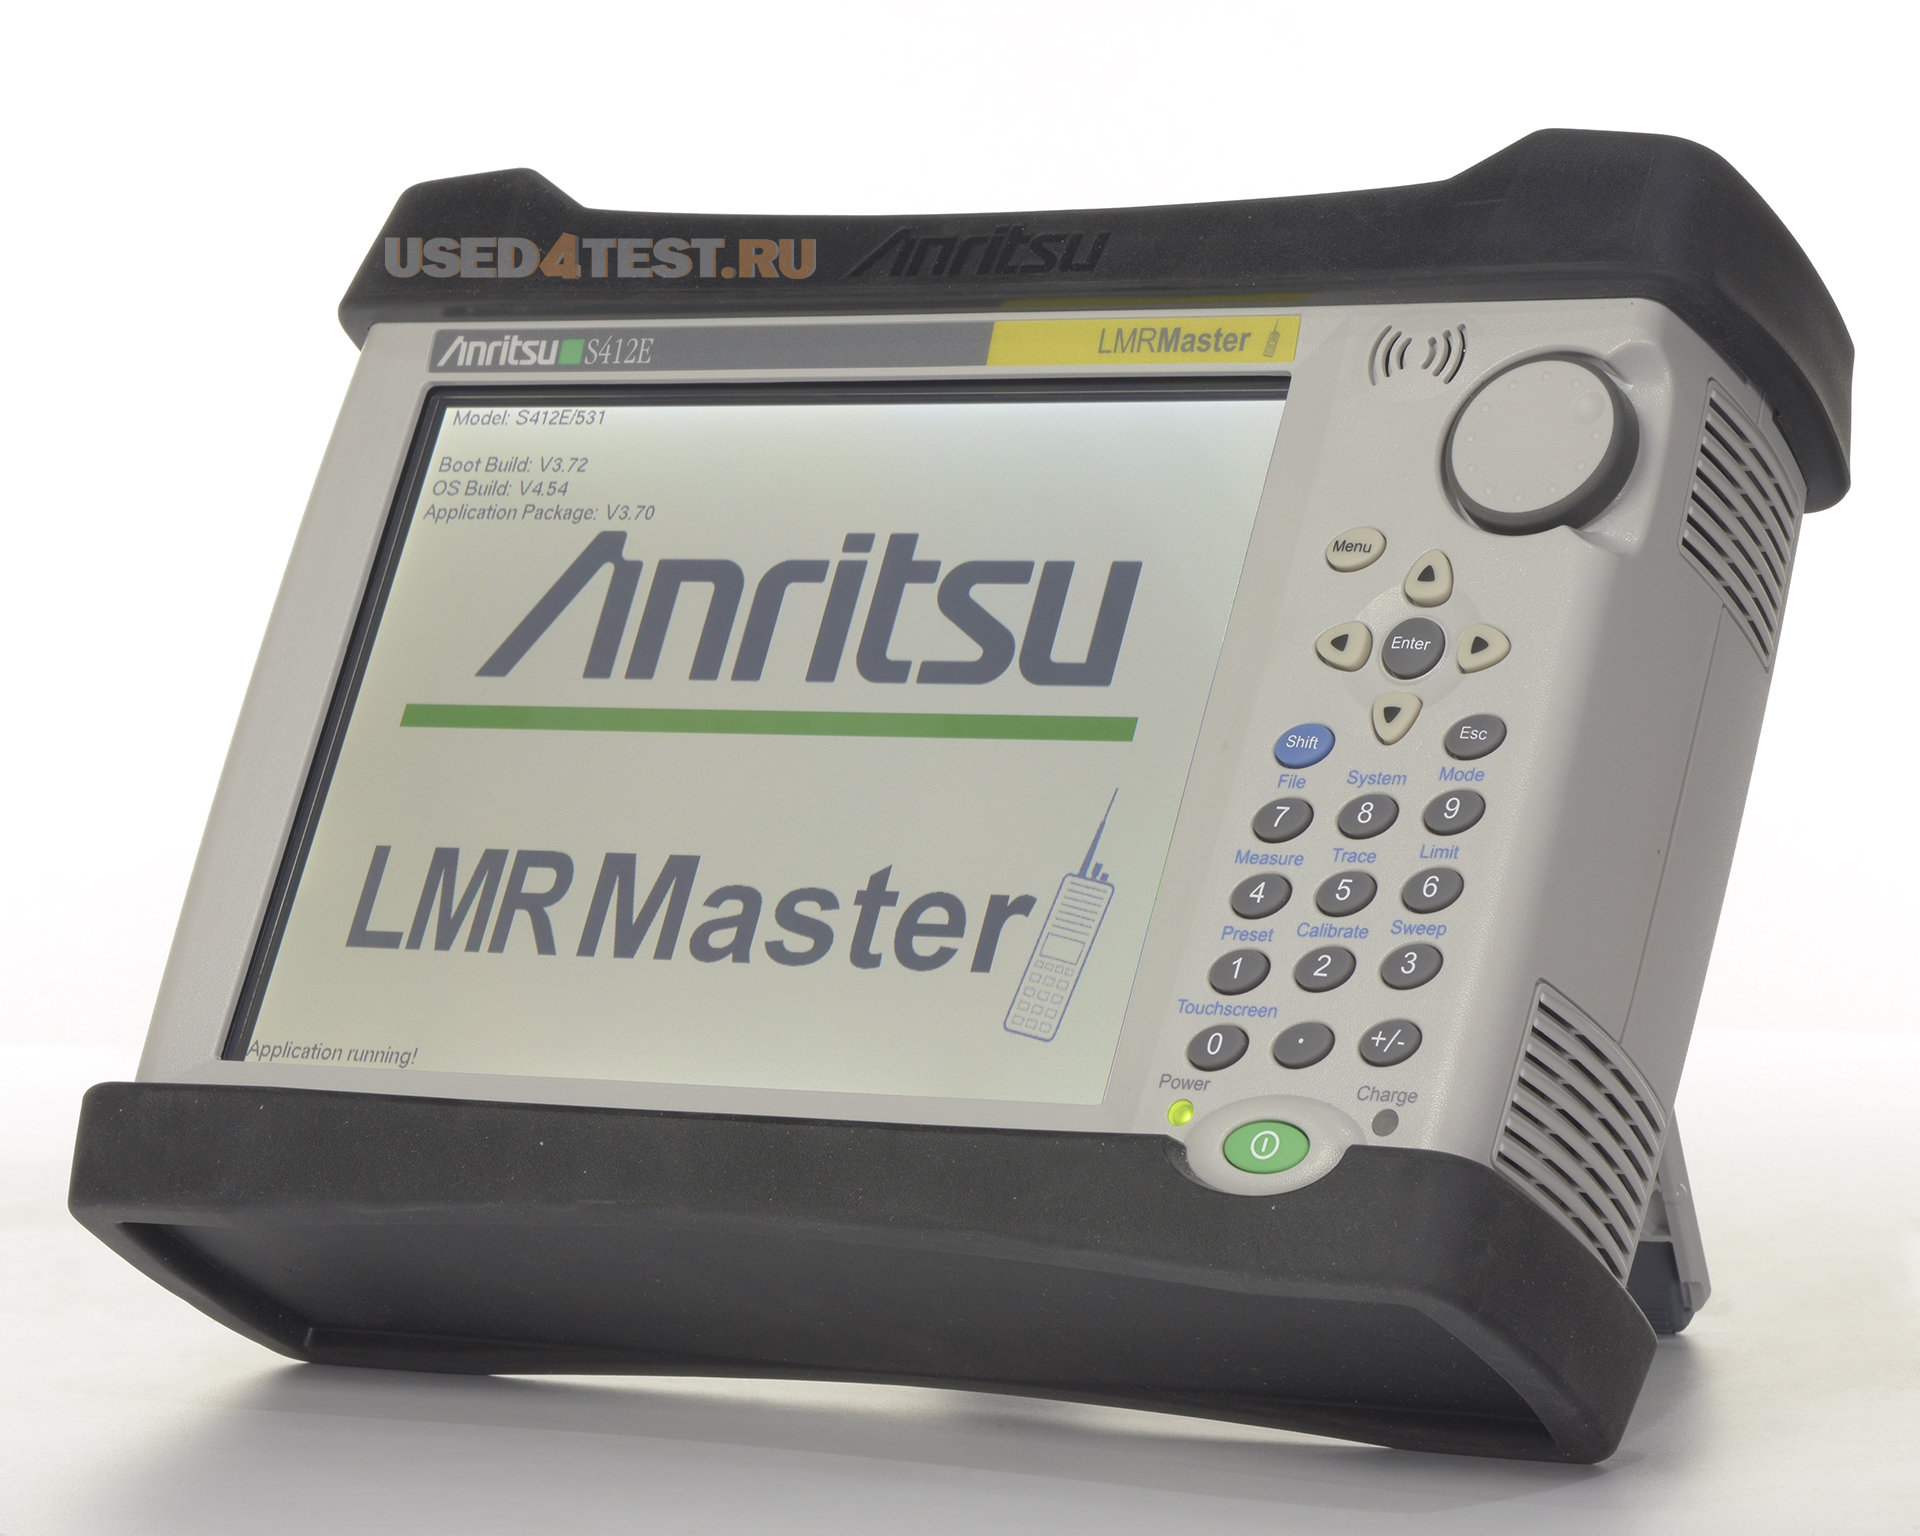 Тестер радиосвязи Anritsu LMR Master S412Eс диапазоном частот от 500 кГц до 1,6 ГГц (до 6 ГГц)

 Дополнительные опции по запросу

 
 

 Стоимость указана в Рублях DDP Москва по безналичному расчету включая НДС 20%
